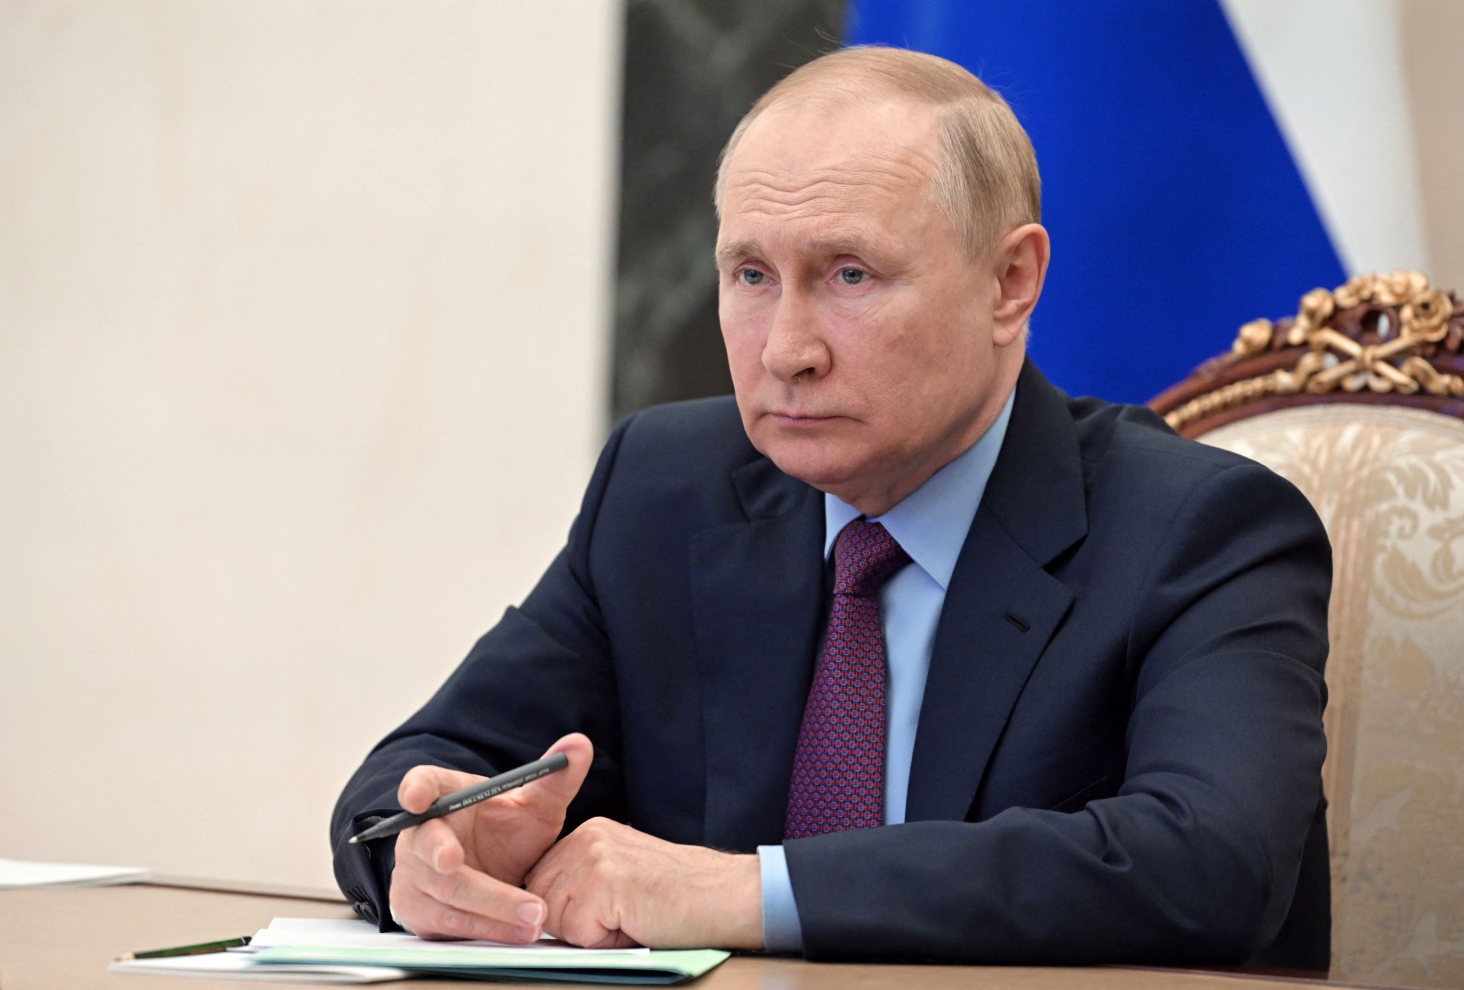 Truyền thông Anh: Một quan chức thân cận ông Putin bí mật liên lạc với phương Tây để chấm dứt chiến tranh